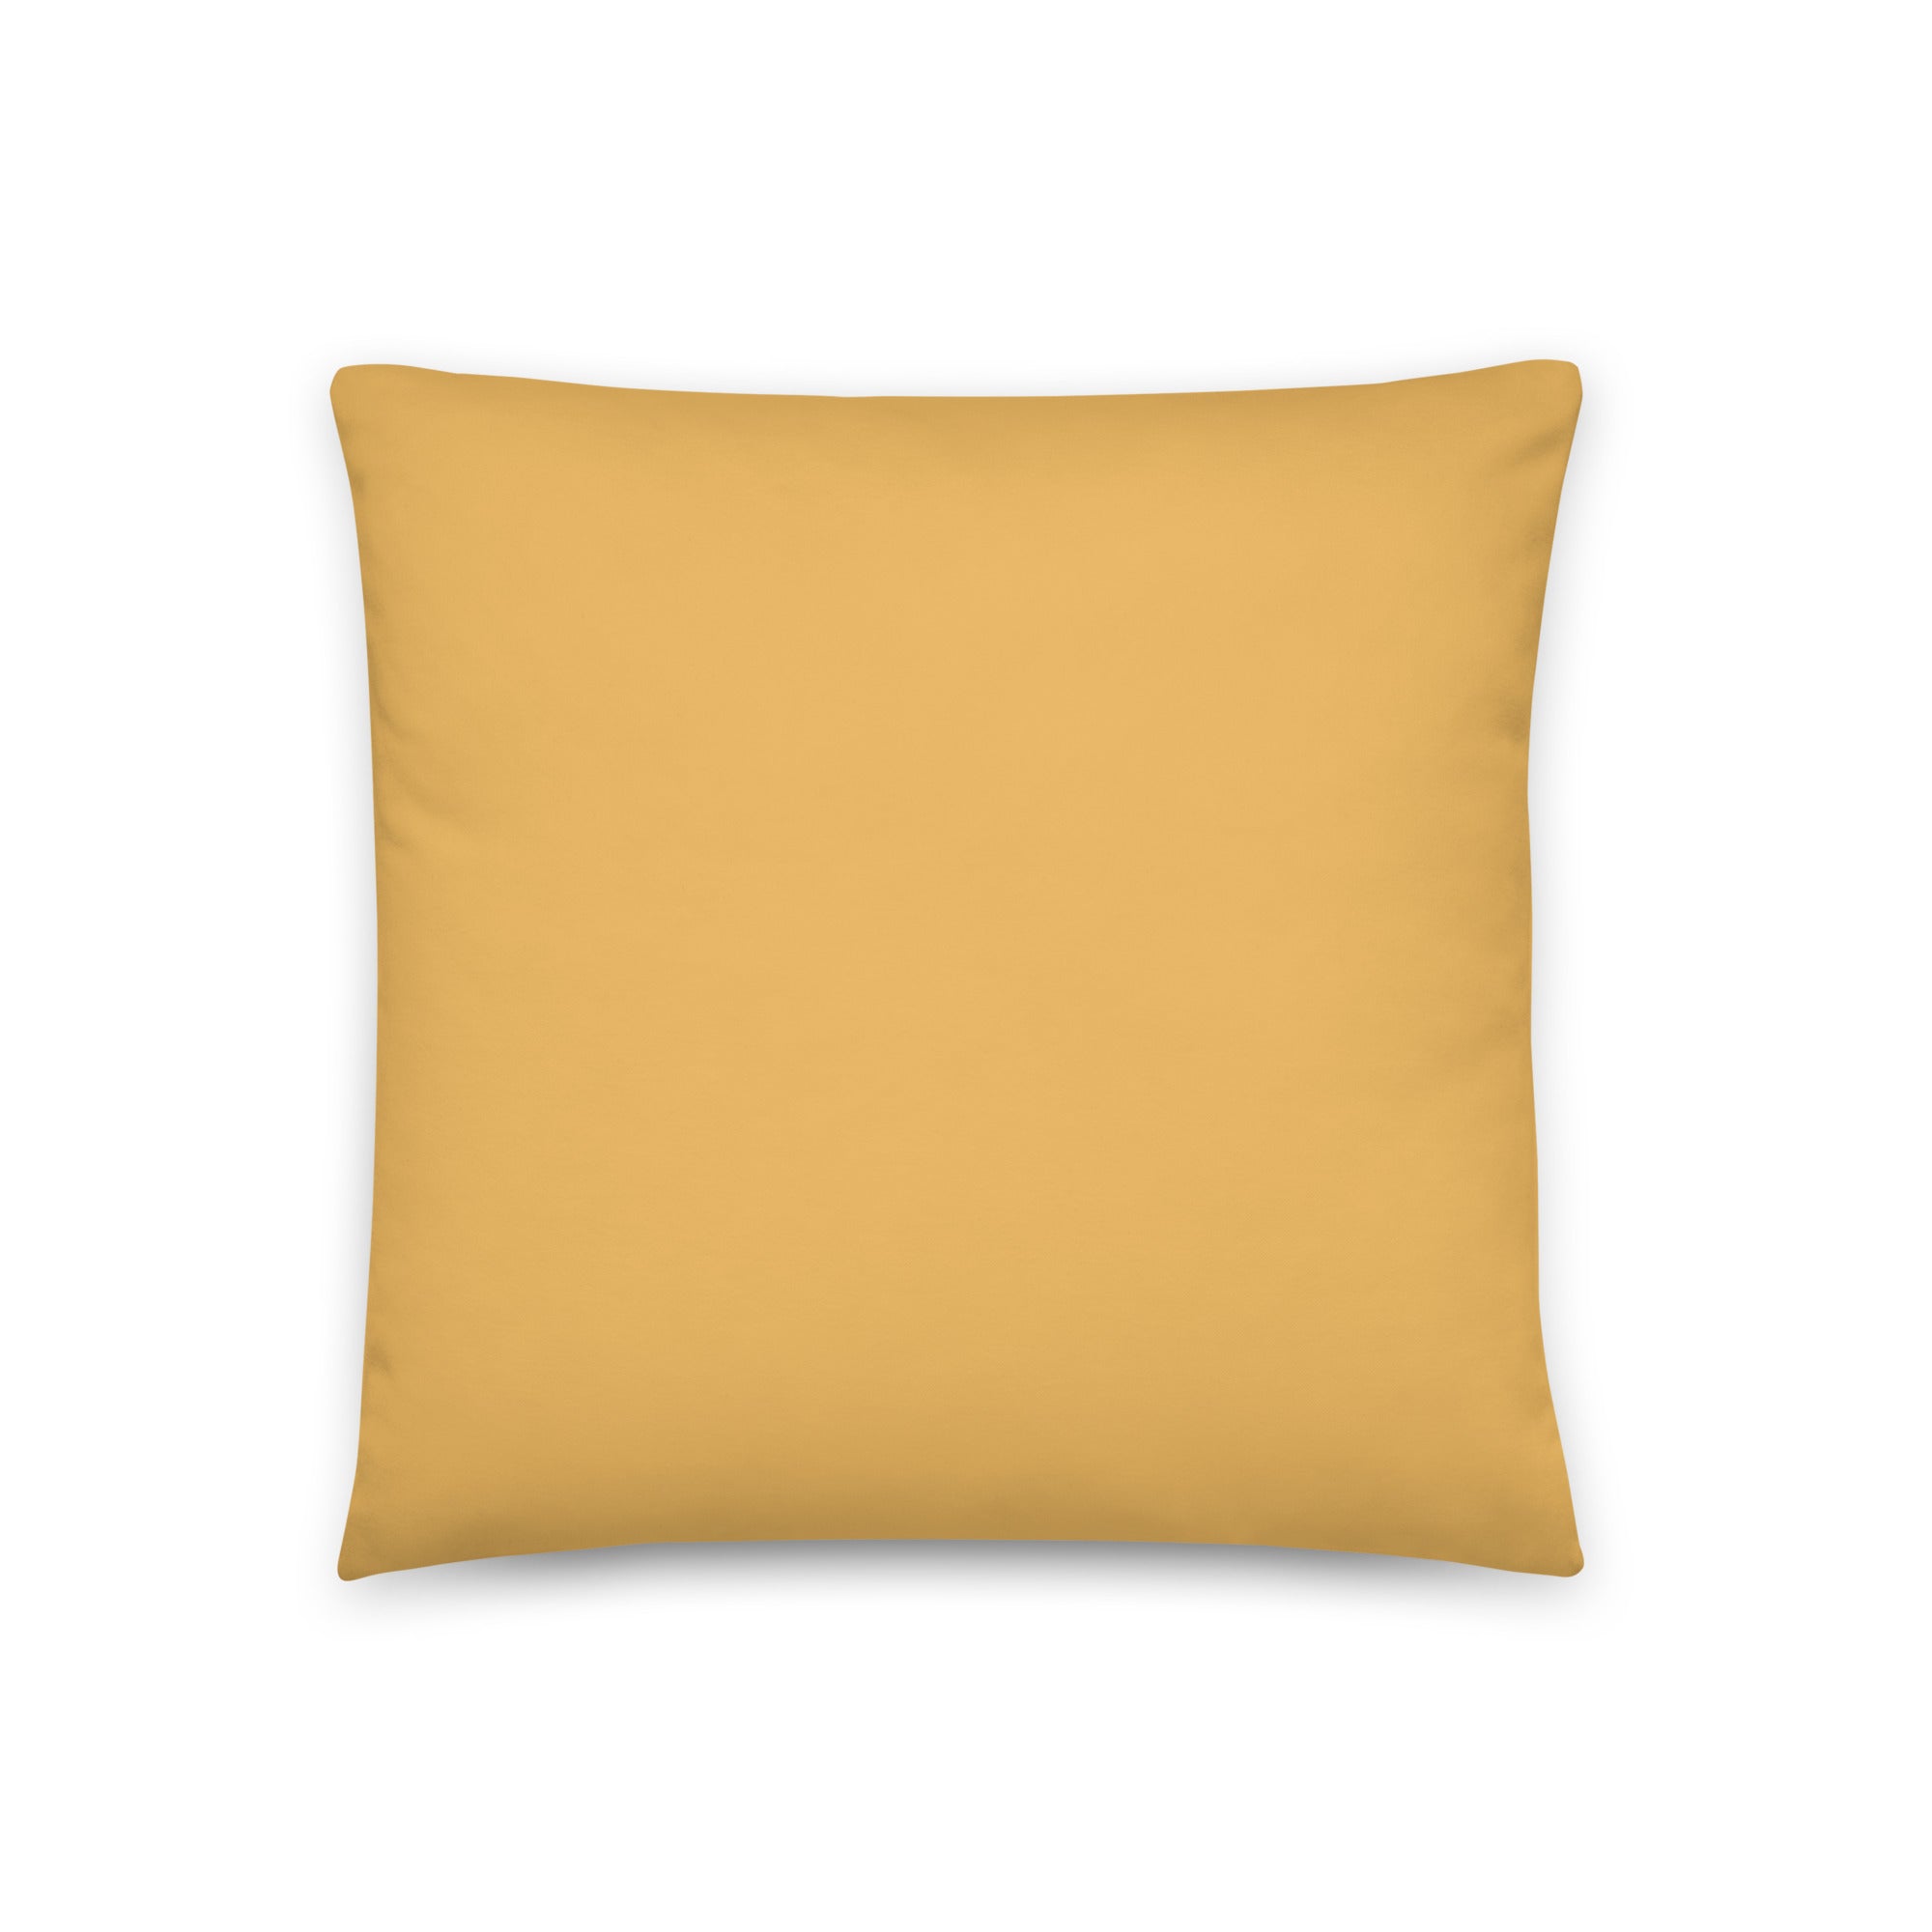 Sleeping Ginger Cat Pillow - Art Love Decor